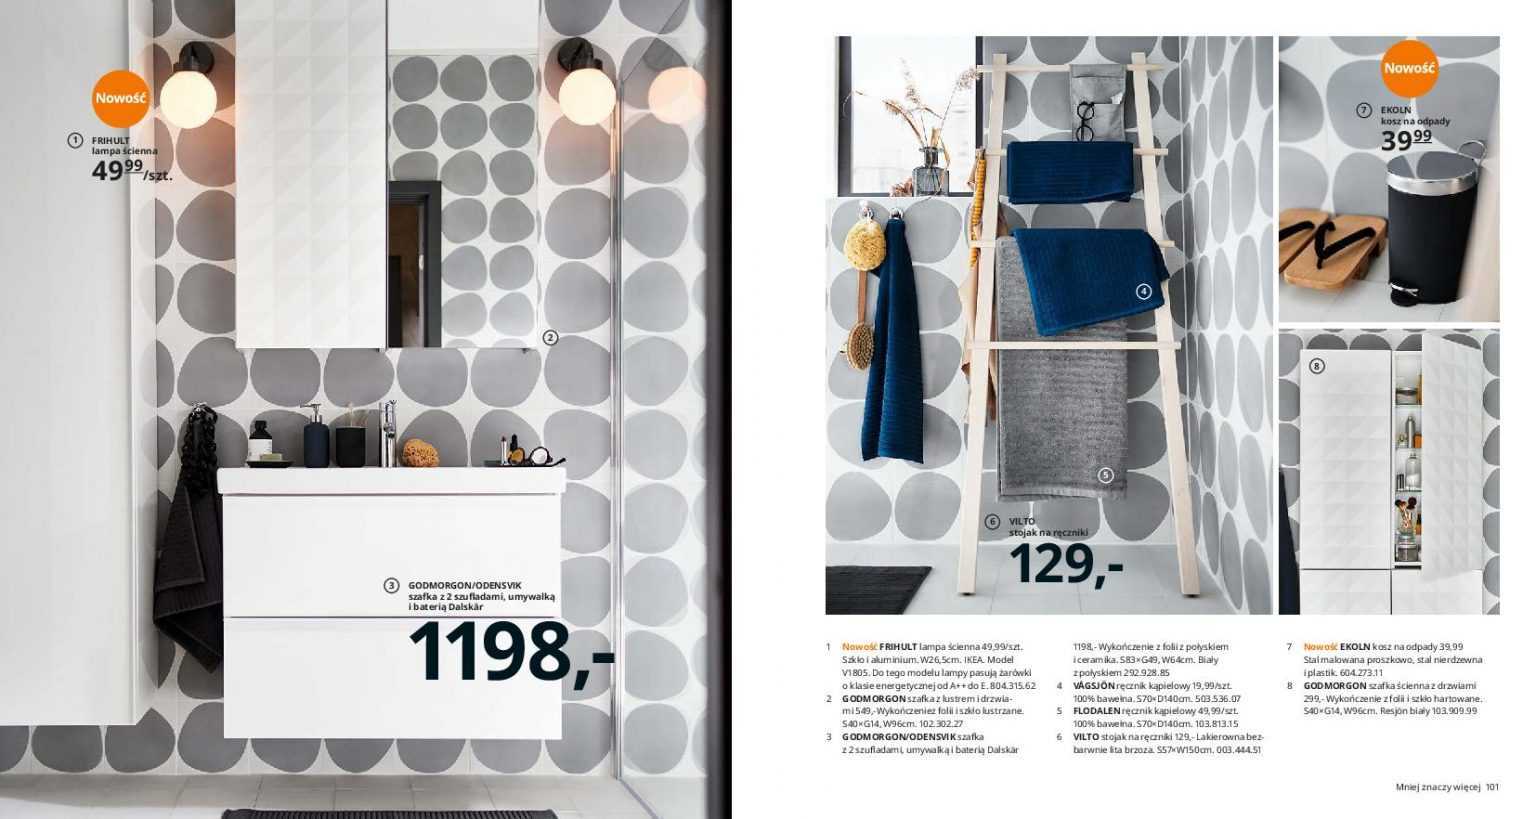 Дизайн интерьера в стиле икеа – самое лучшее соотношение стоимости и качества (40 фото)